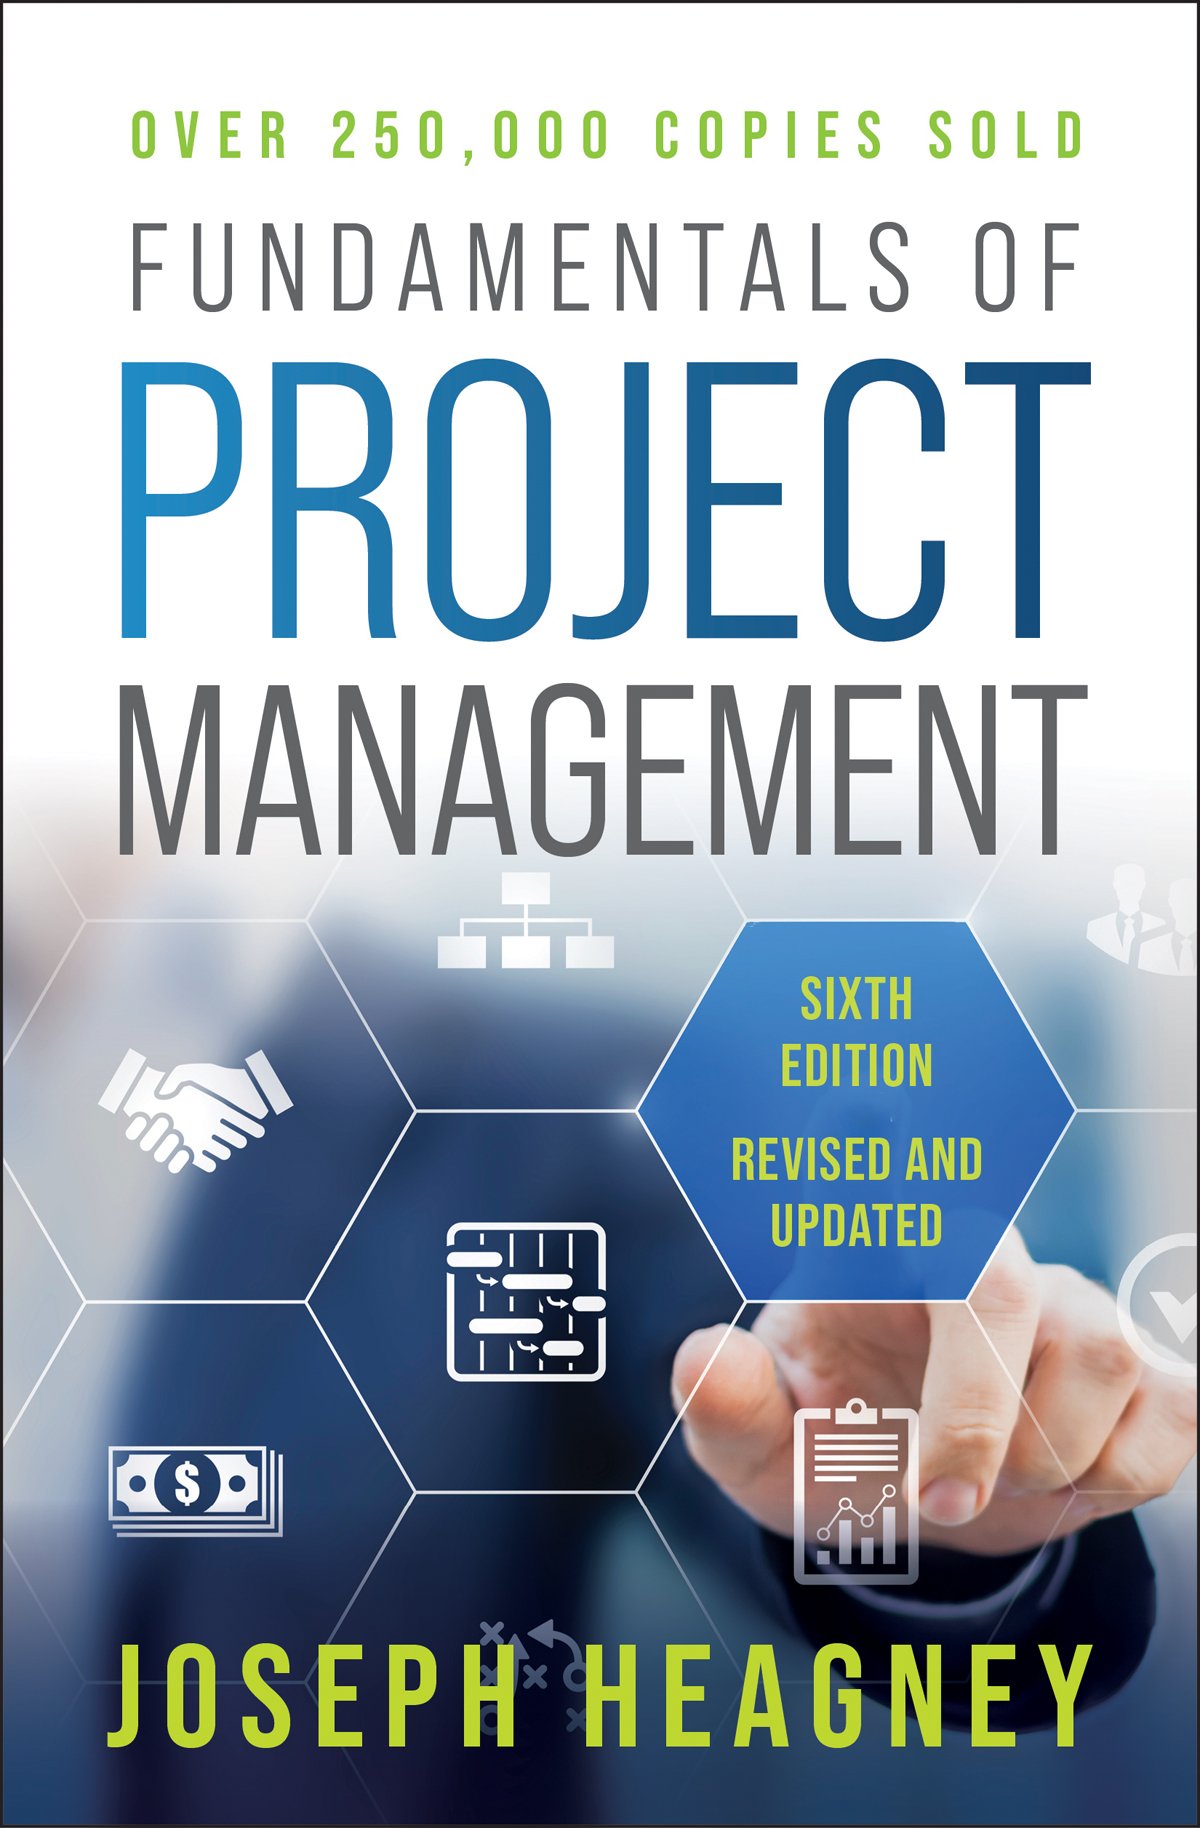 project management fundamentals essay